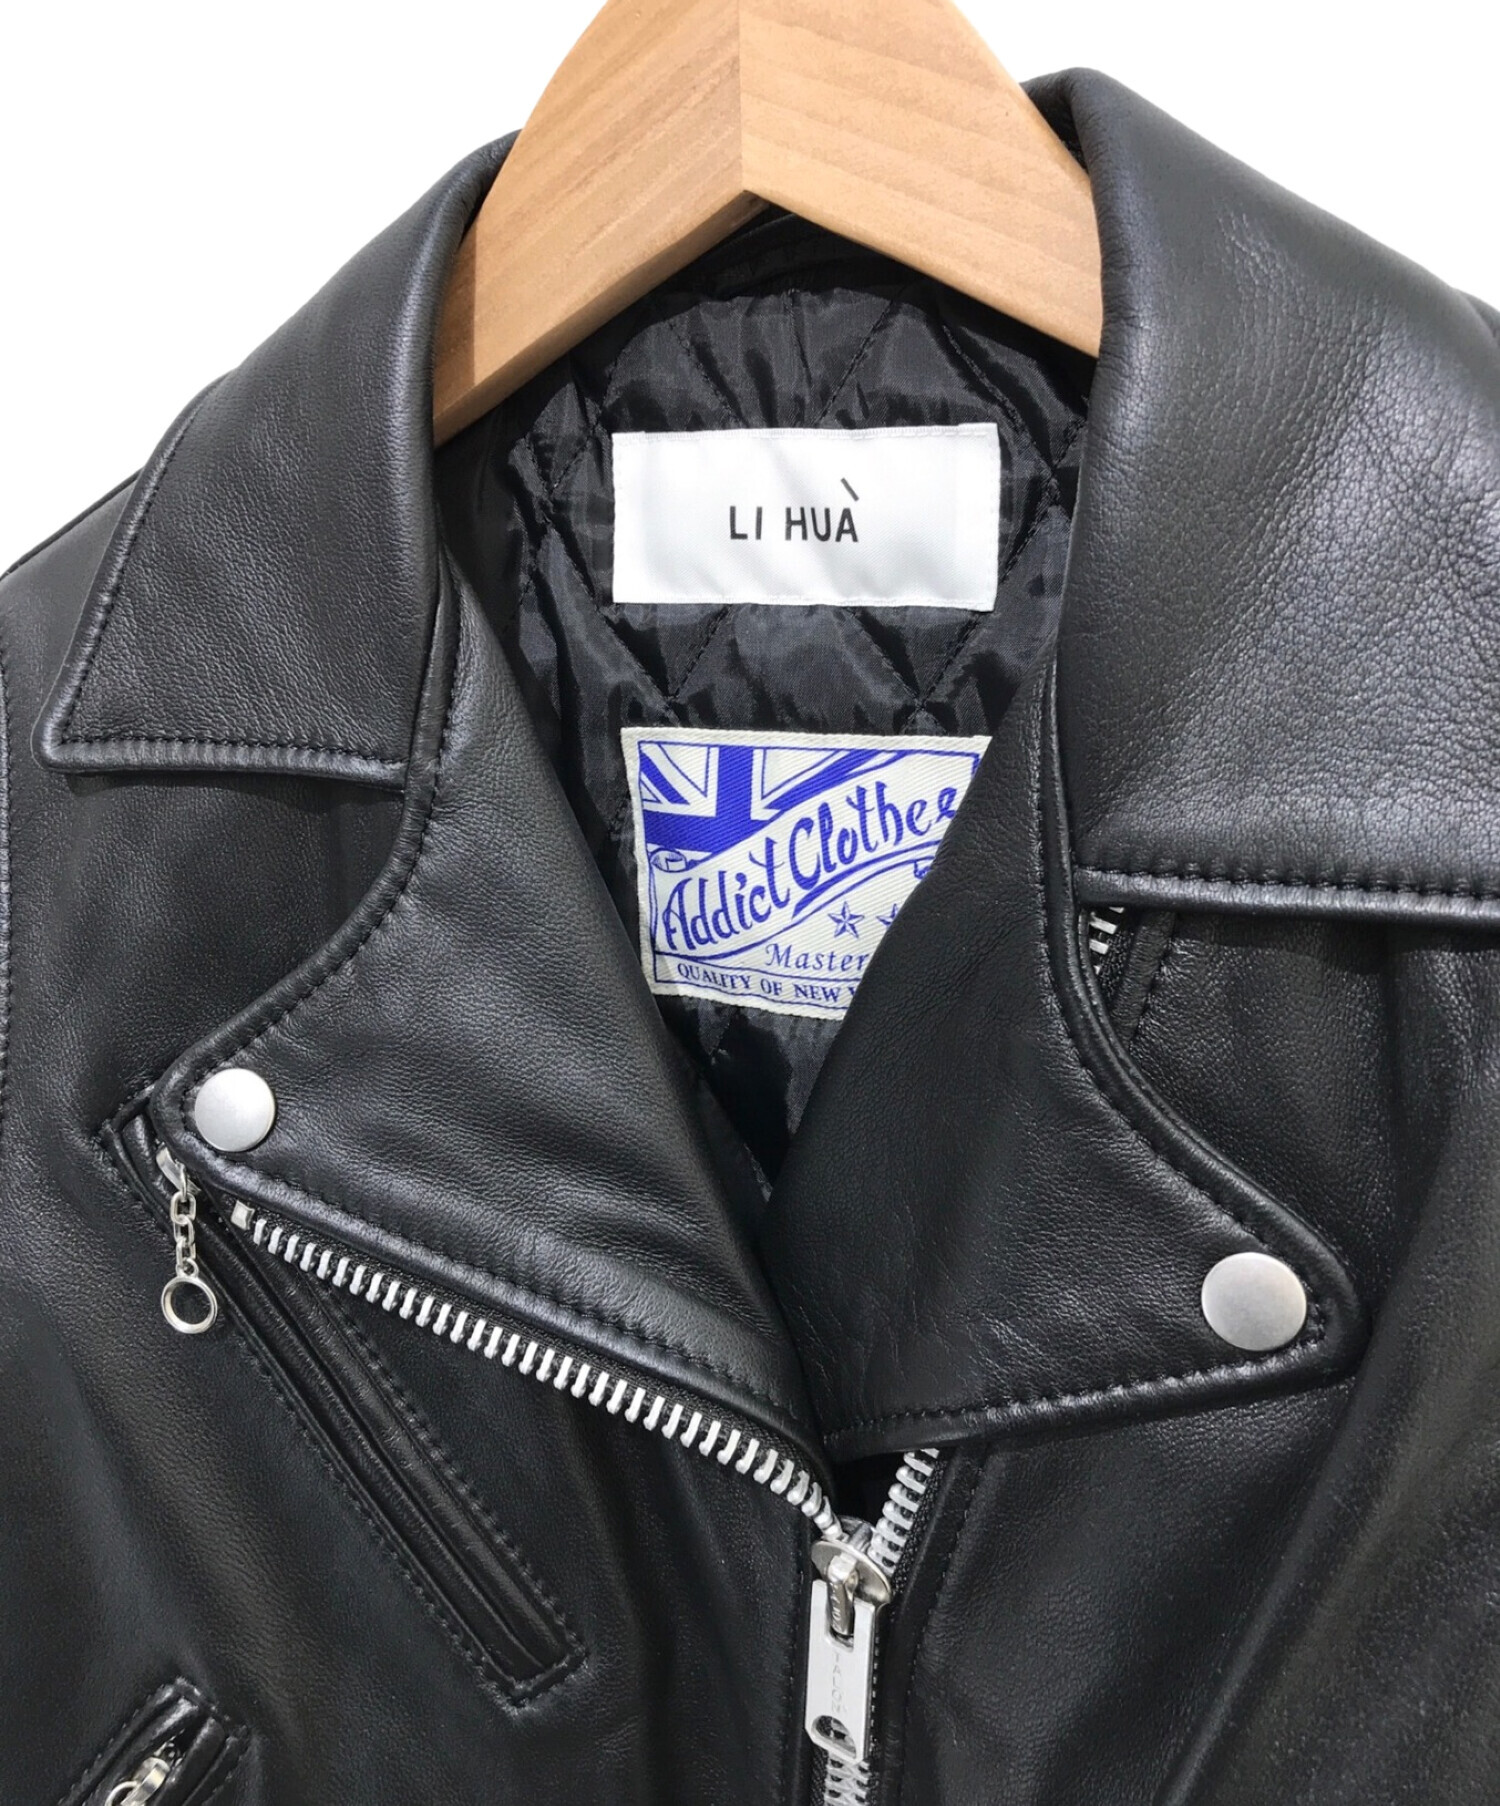 LI HUA×ADDICT CLOTHES (リーファー×アディクトクローズ) シープレザーライダースジャケット ブラック サイズ:S